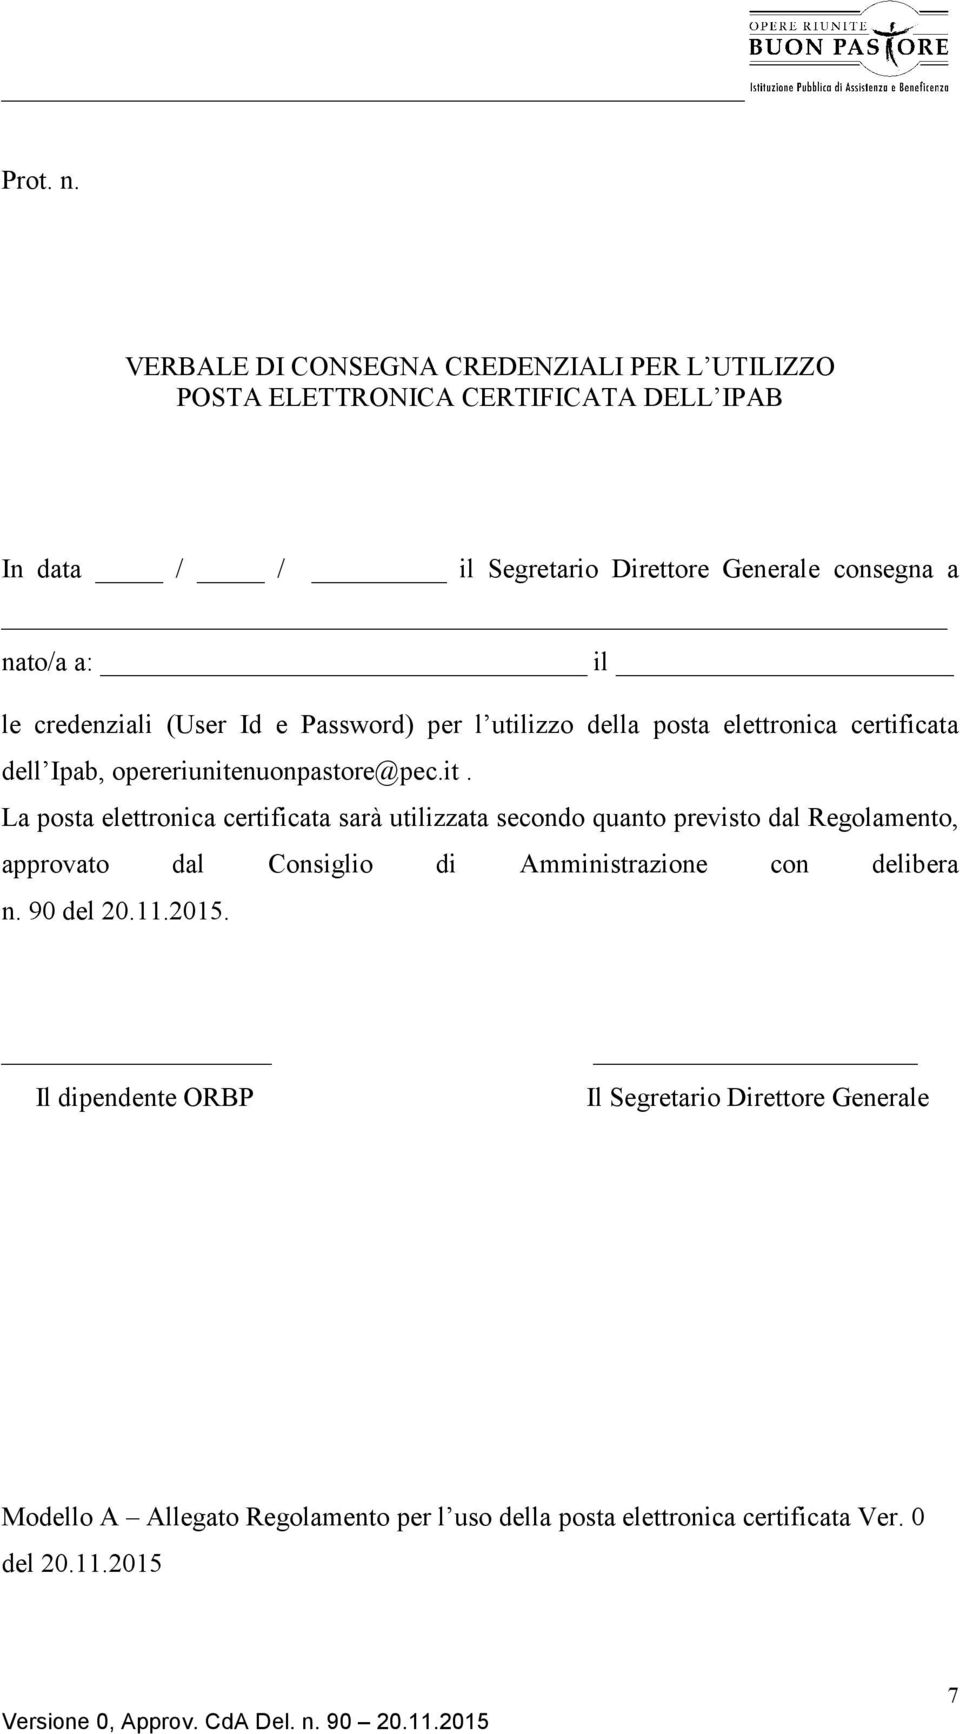 il le credenziali (User Id e Password) per l utilizzo della posta elettronica certificata dell Ipab, opereriunite